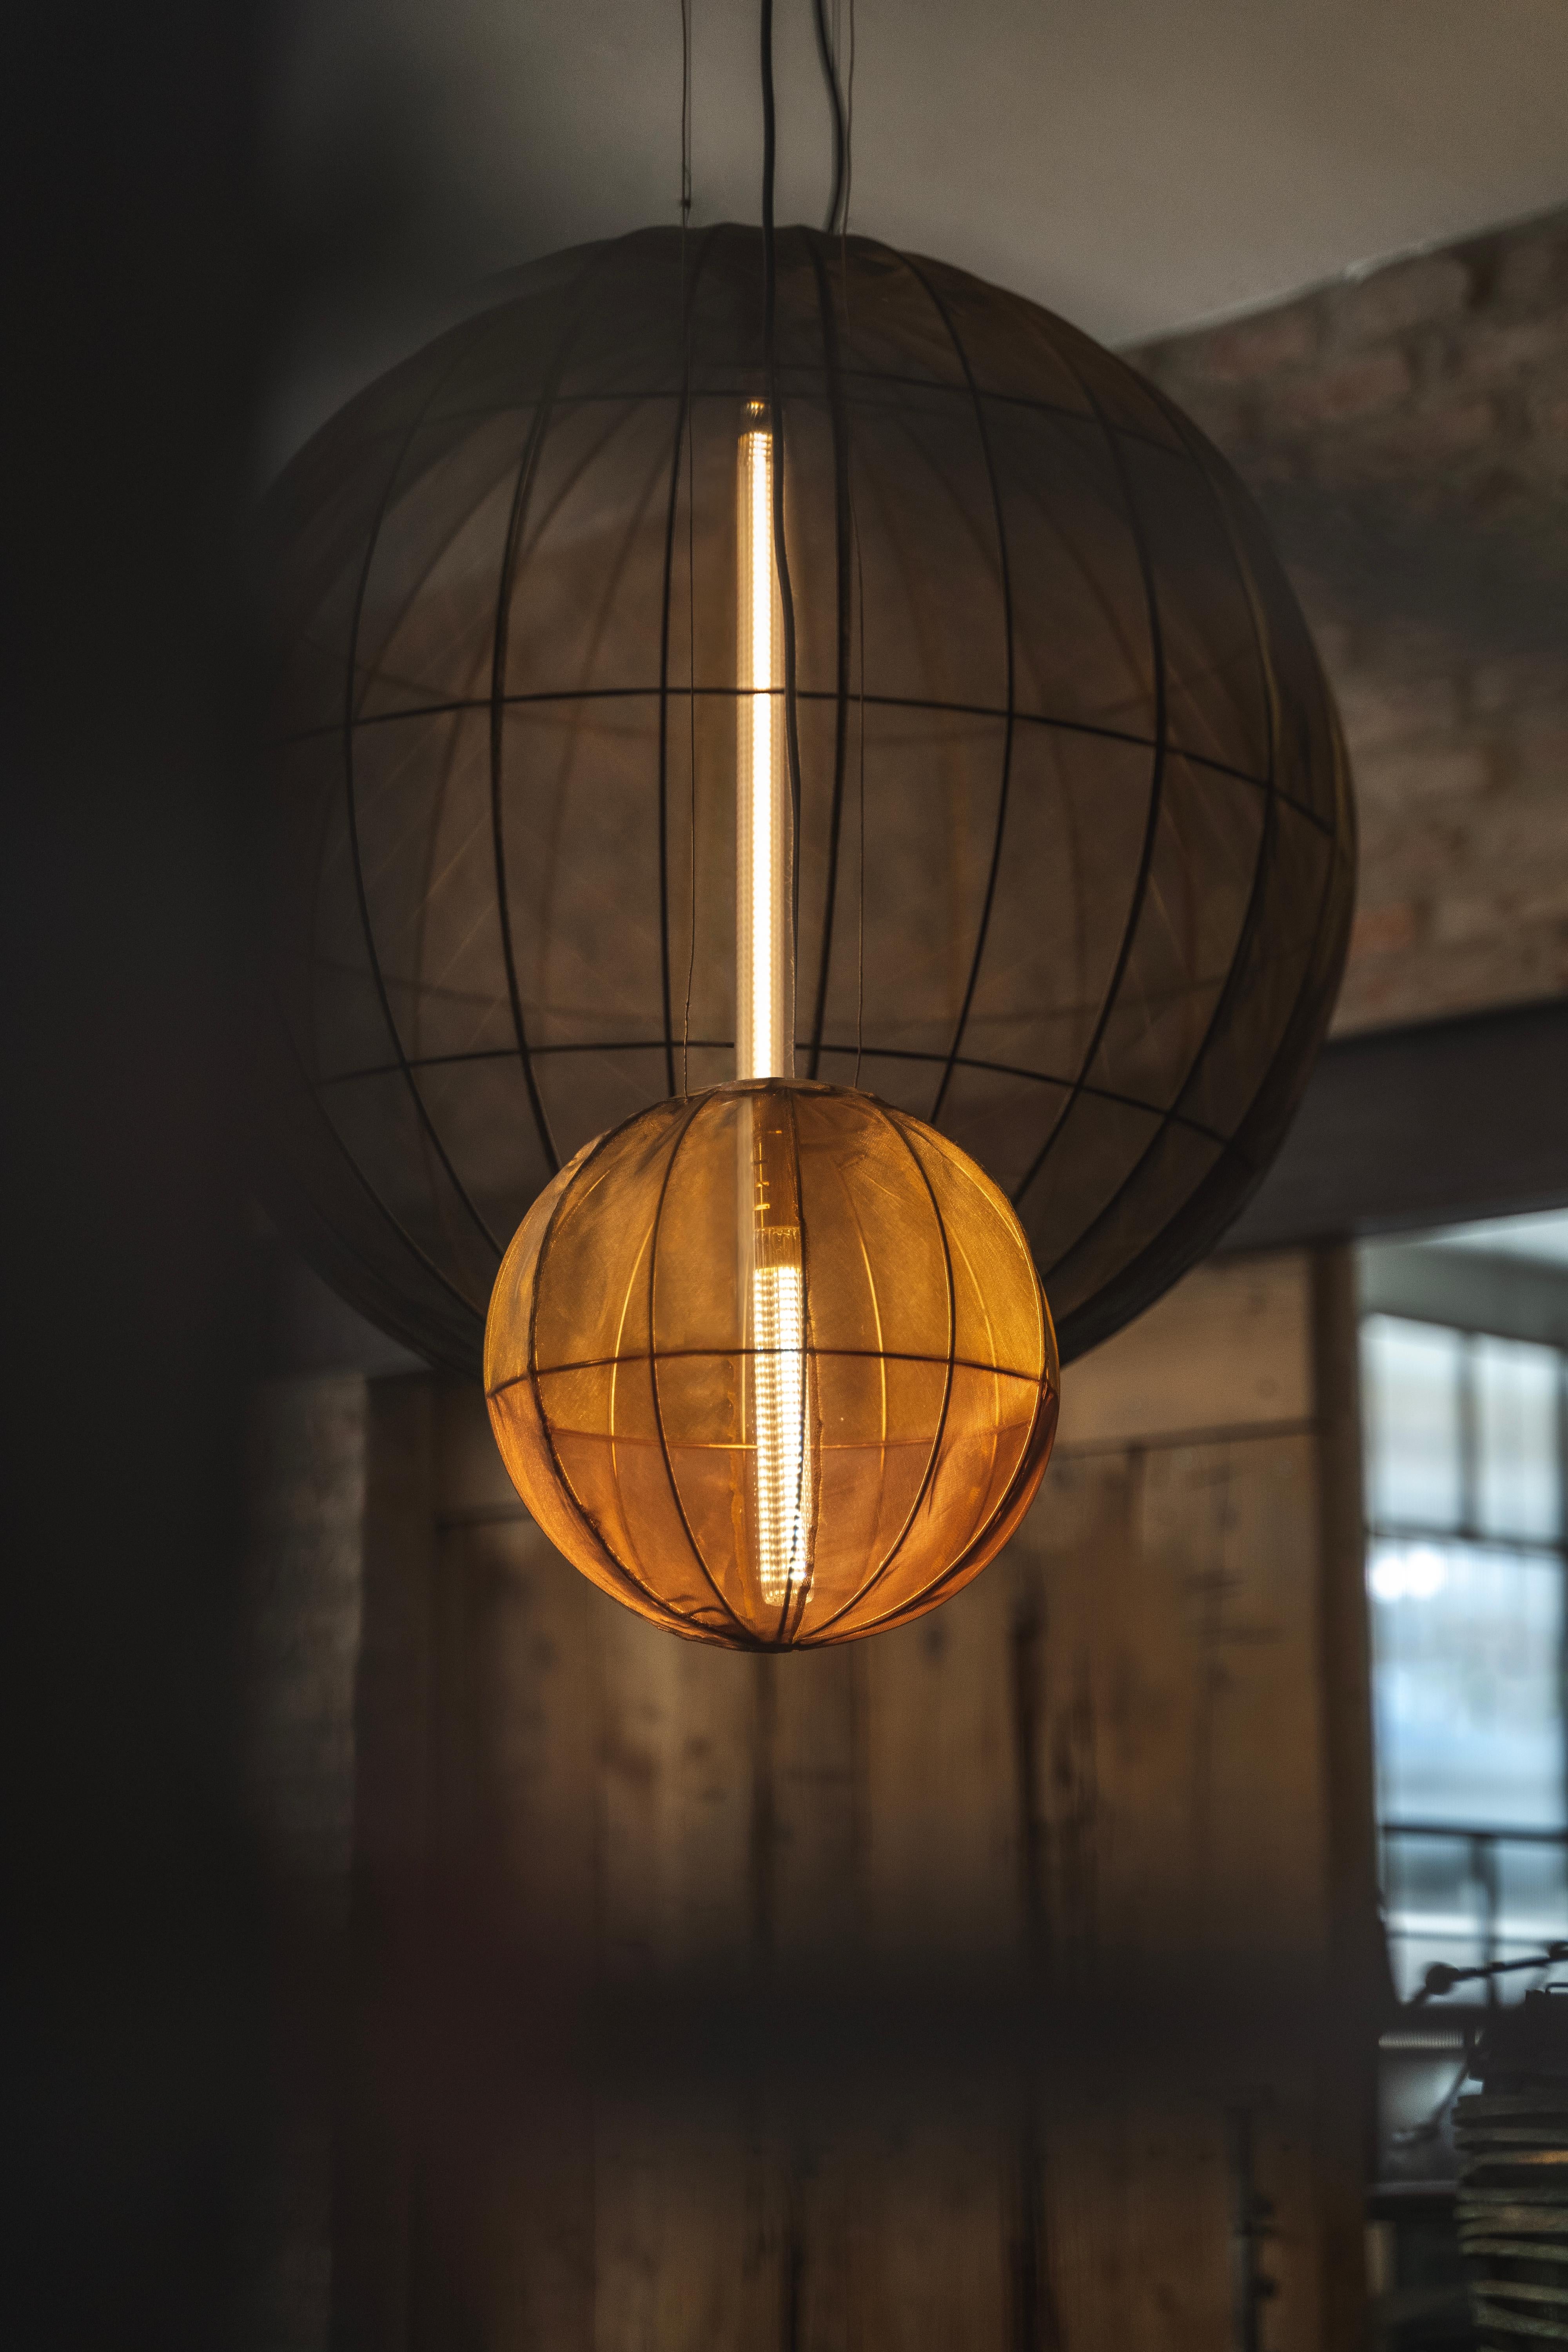 Les Oxygen Spheres sont une collection de lampes à suspension légères et gracieuses, dont la structure est soigneusement enveloppée d'un tissu métallique, un travail de haute qualité.
Ces lampes sont extrêmement légères, même dans leurs versions